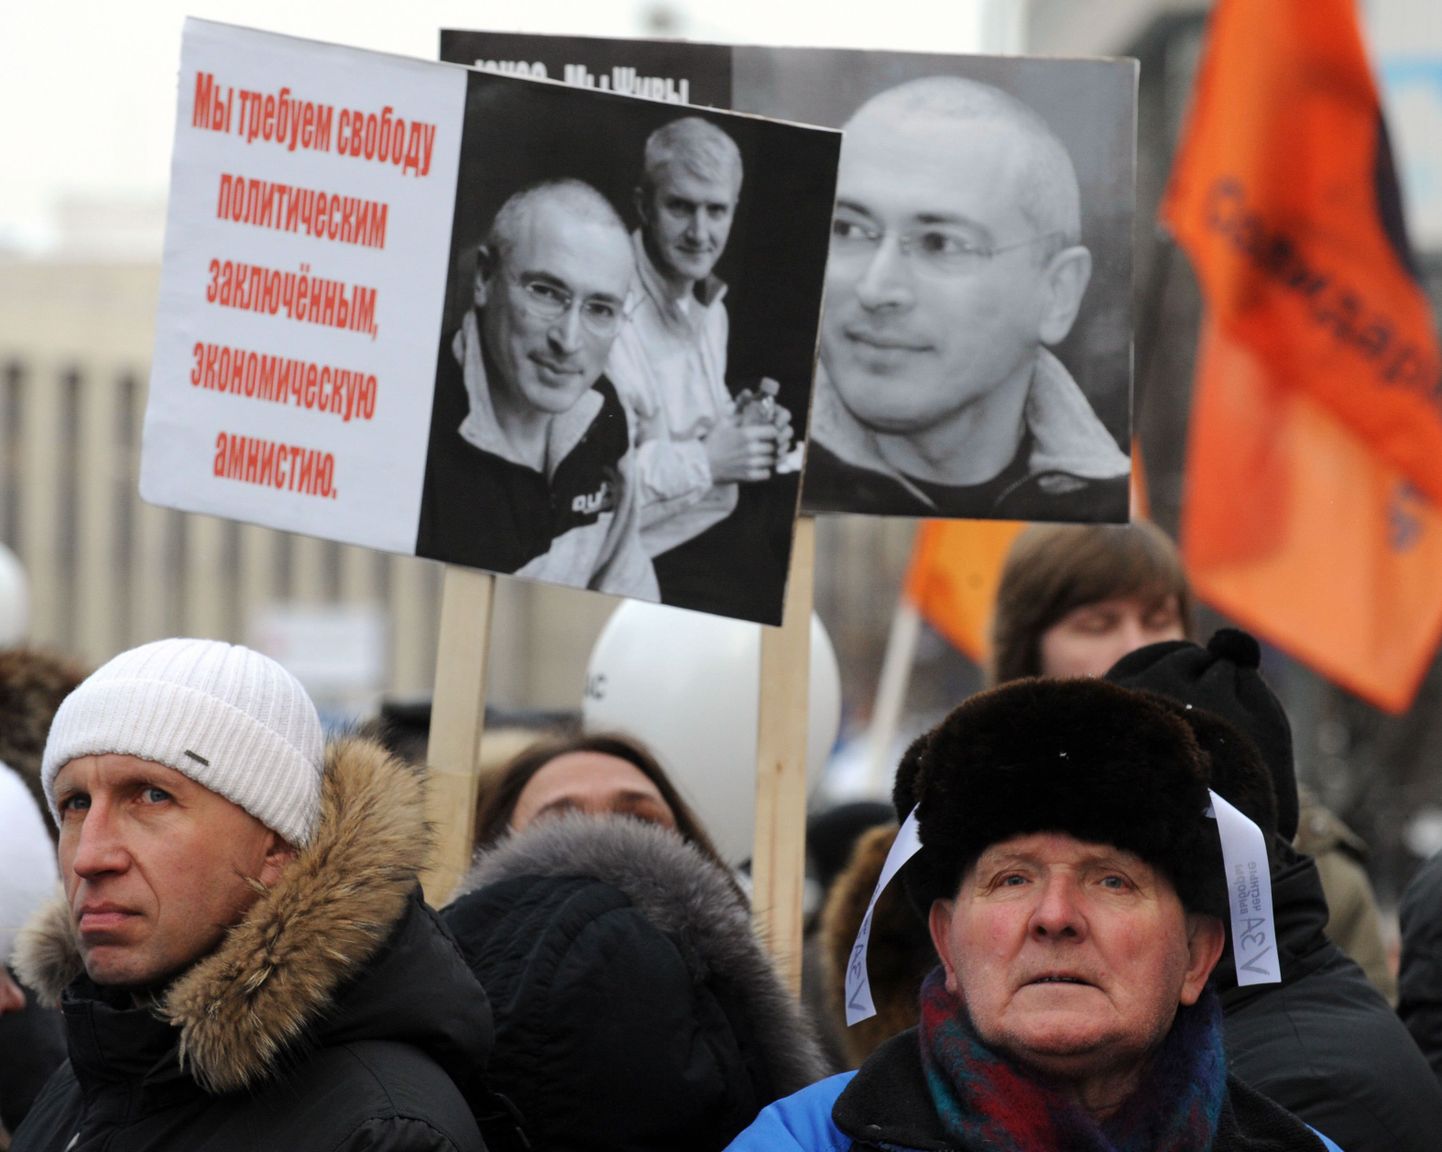 Mihhail Hodorkovski vabastamist nõudvad plakatid toodi nähtavale, kui mullu detsembri lõpus nõuti ausaid ja puhtaid valimisi.